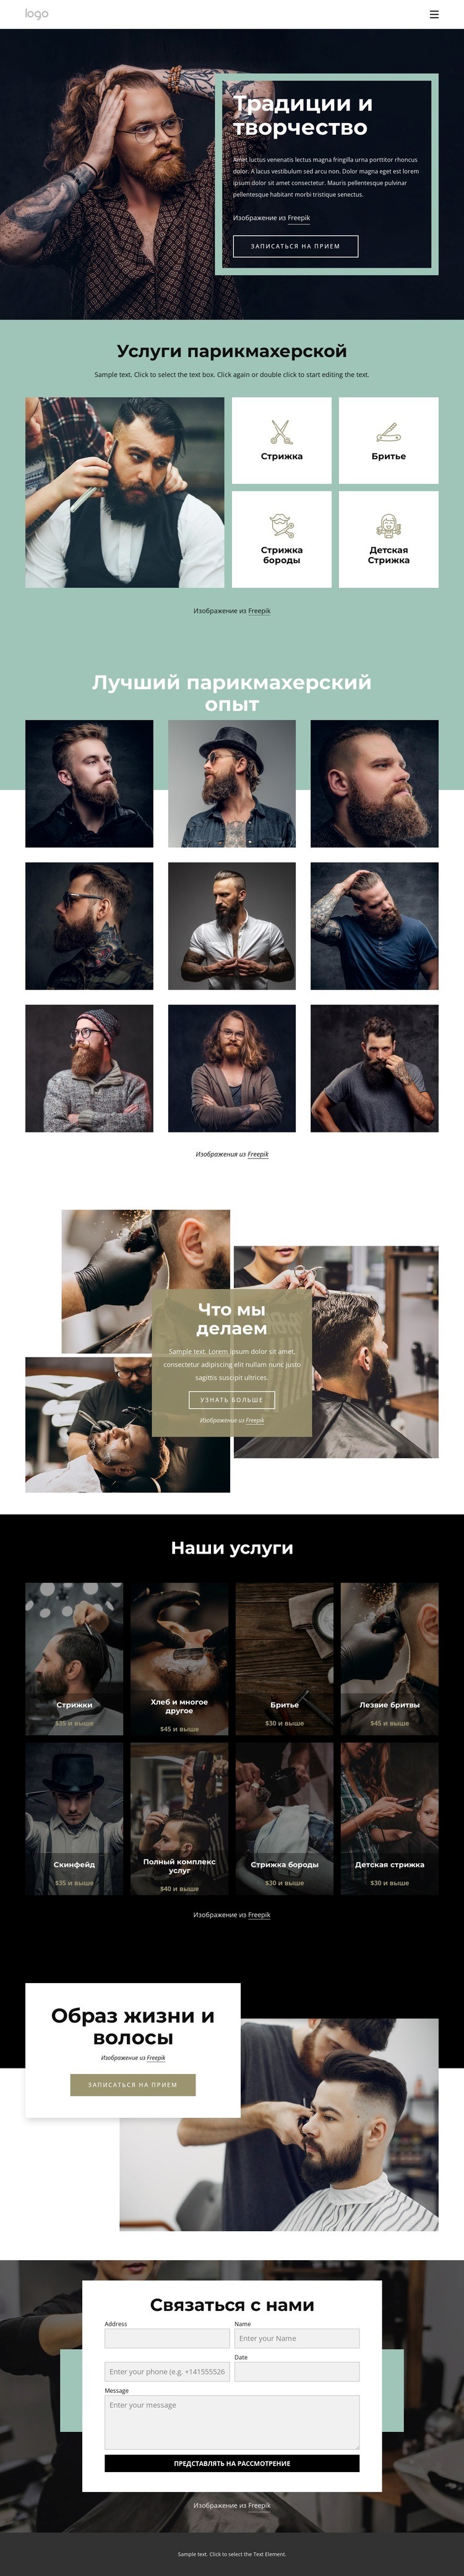 Общественный парикмахерский салон HTML5 шаблон